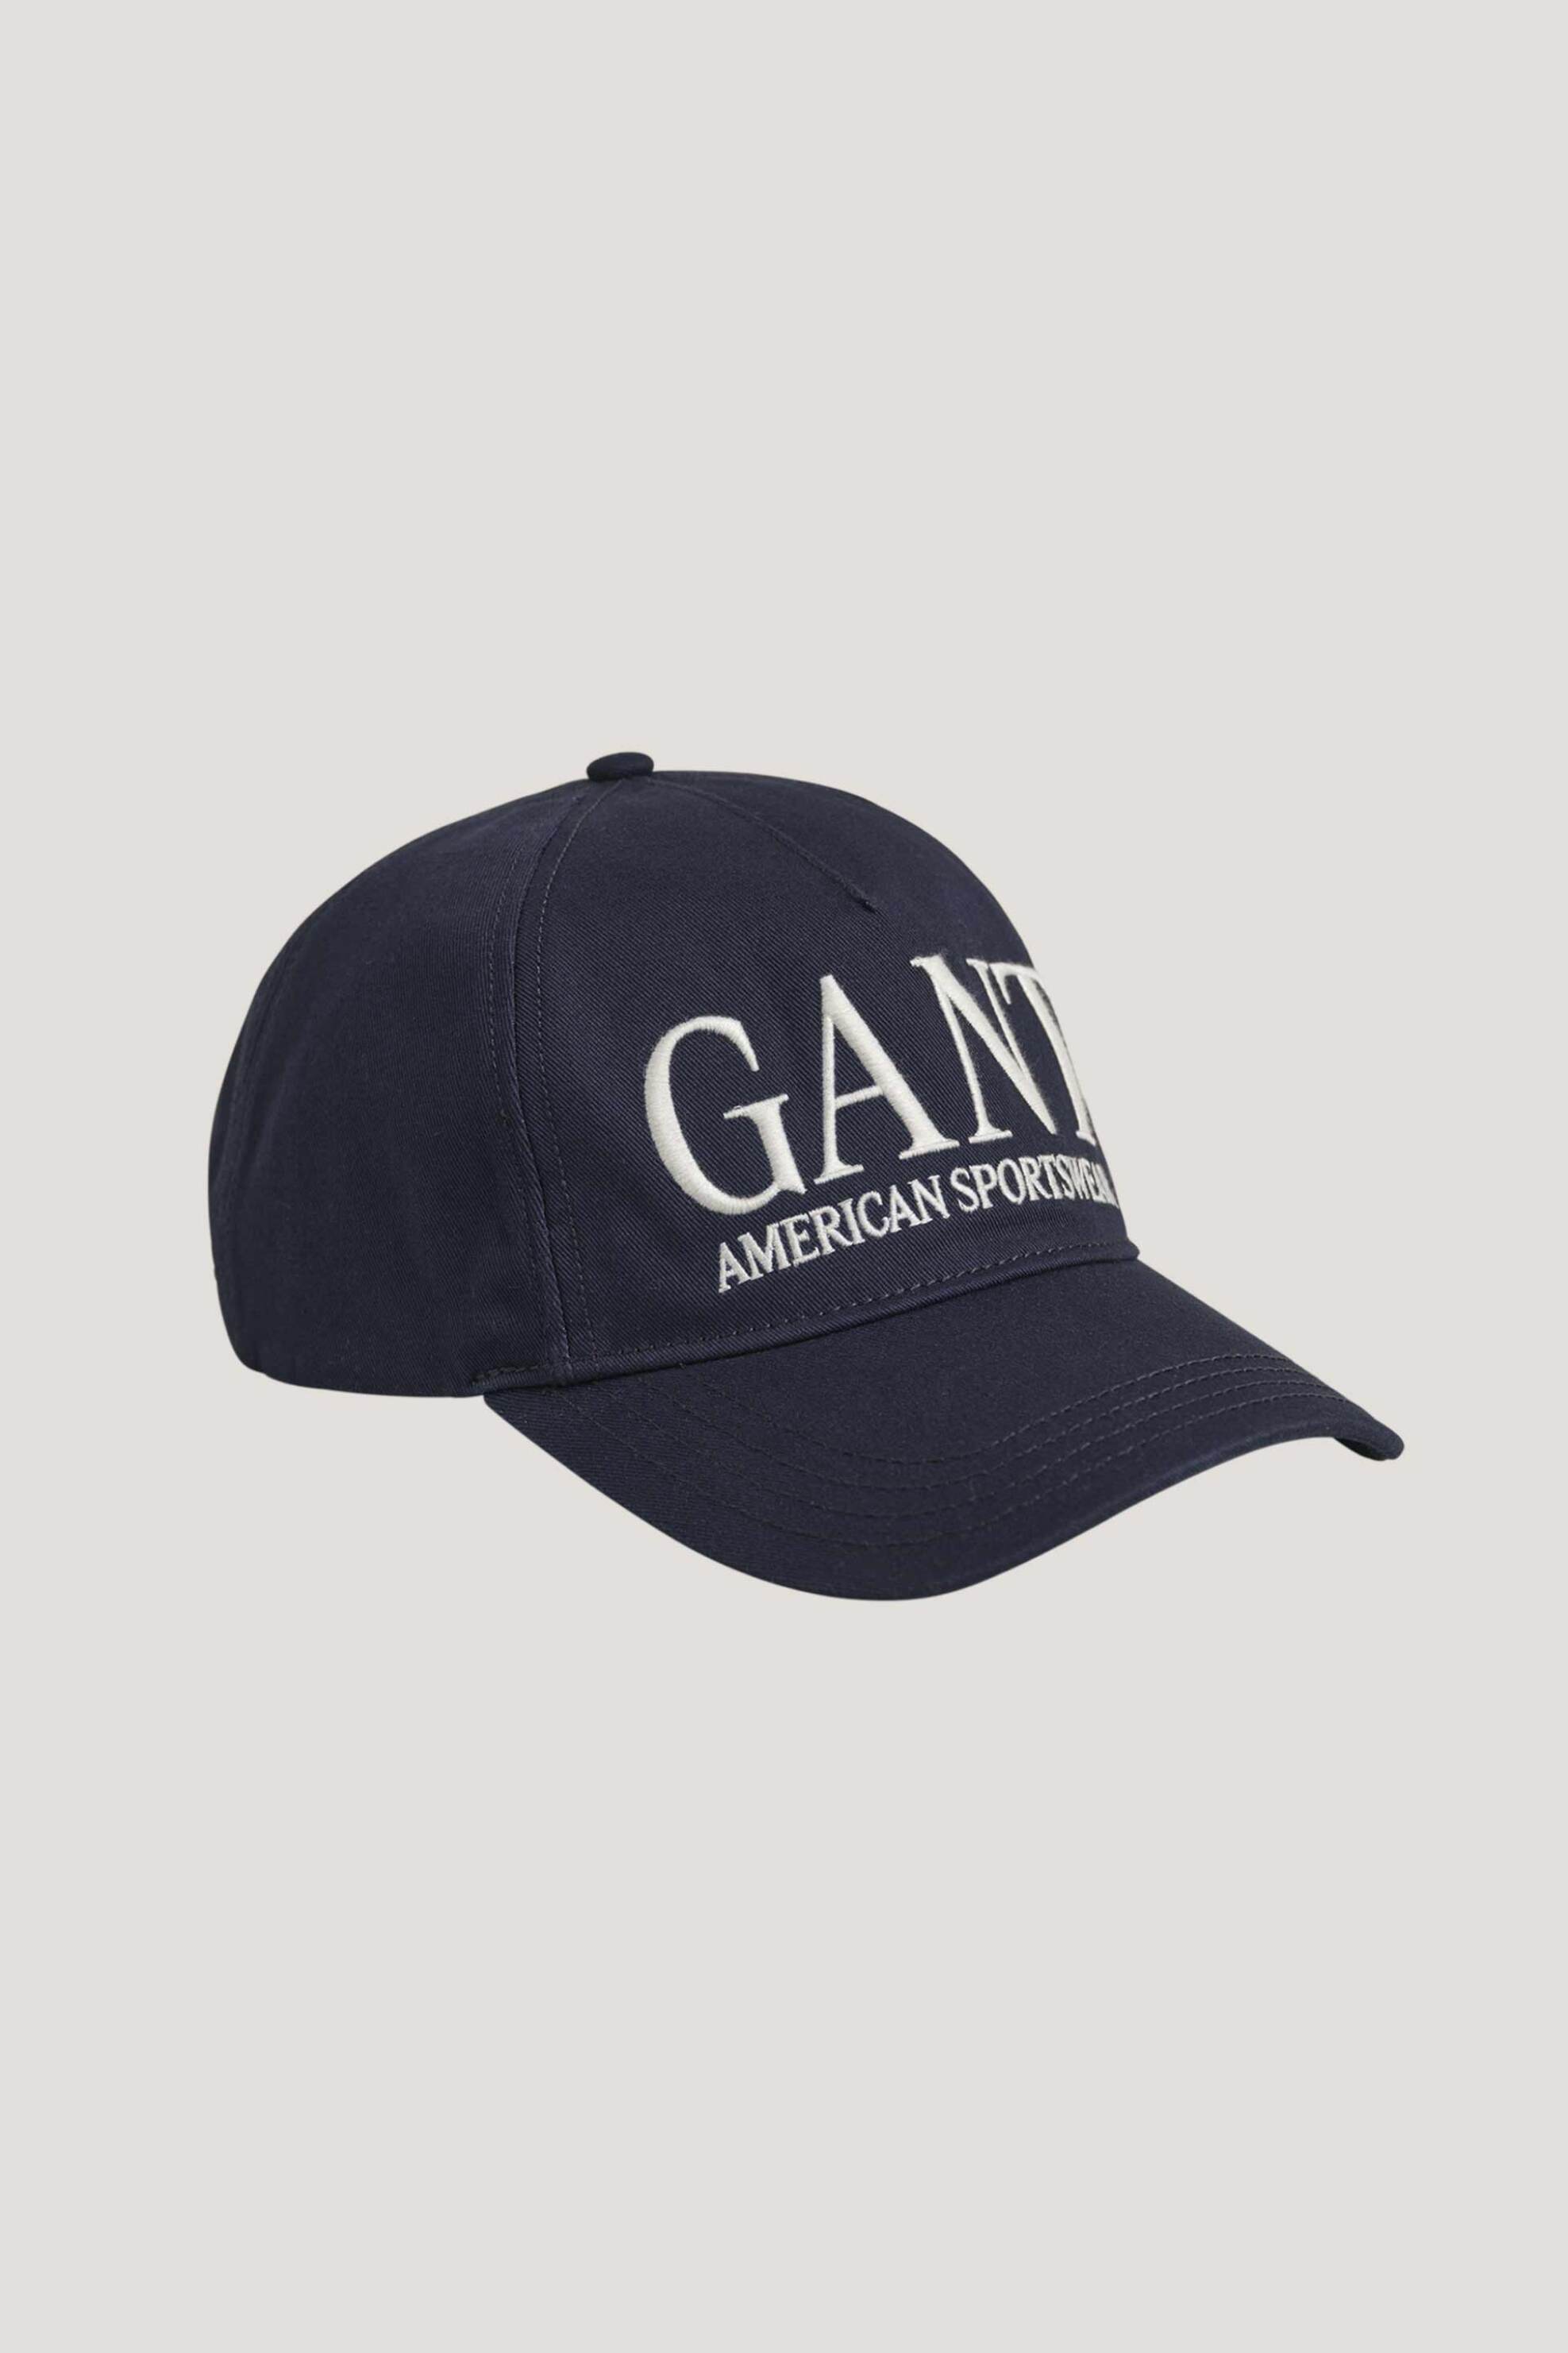 Ανδρική Μόδα > Ανδρικά Αξεσουάρ > Ανδρικά Καπέλα & Σκούφοι Gant ανδρικό βαμβακερό καπέλο μονόχρωμο με contrast κεντημένο λογότυπο - 9900101 Μπλε Σκούρο